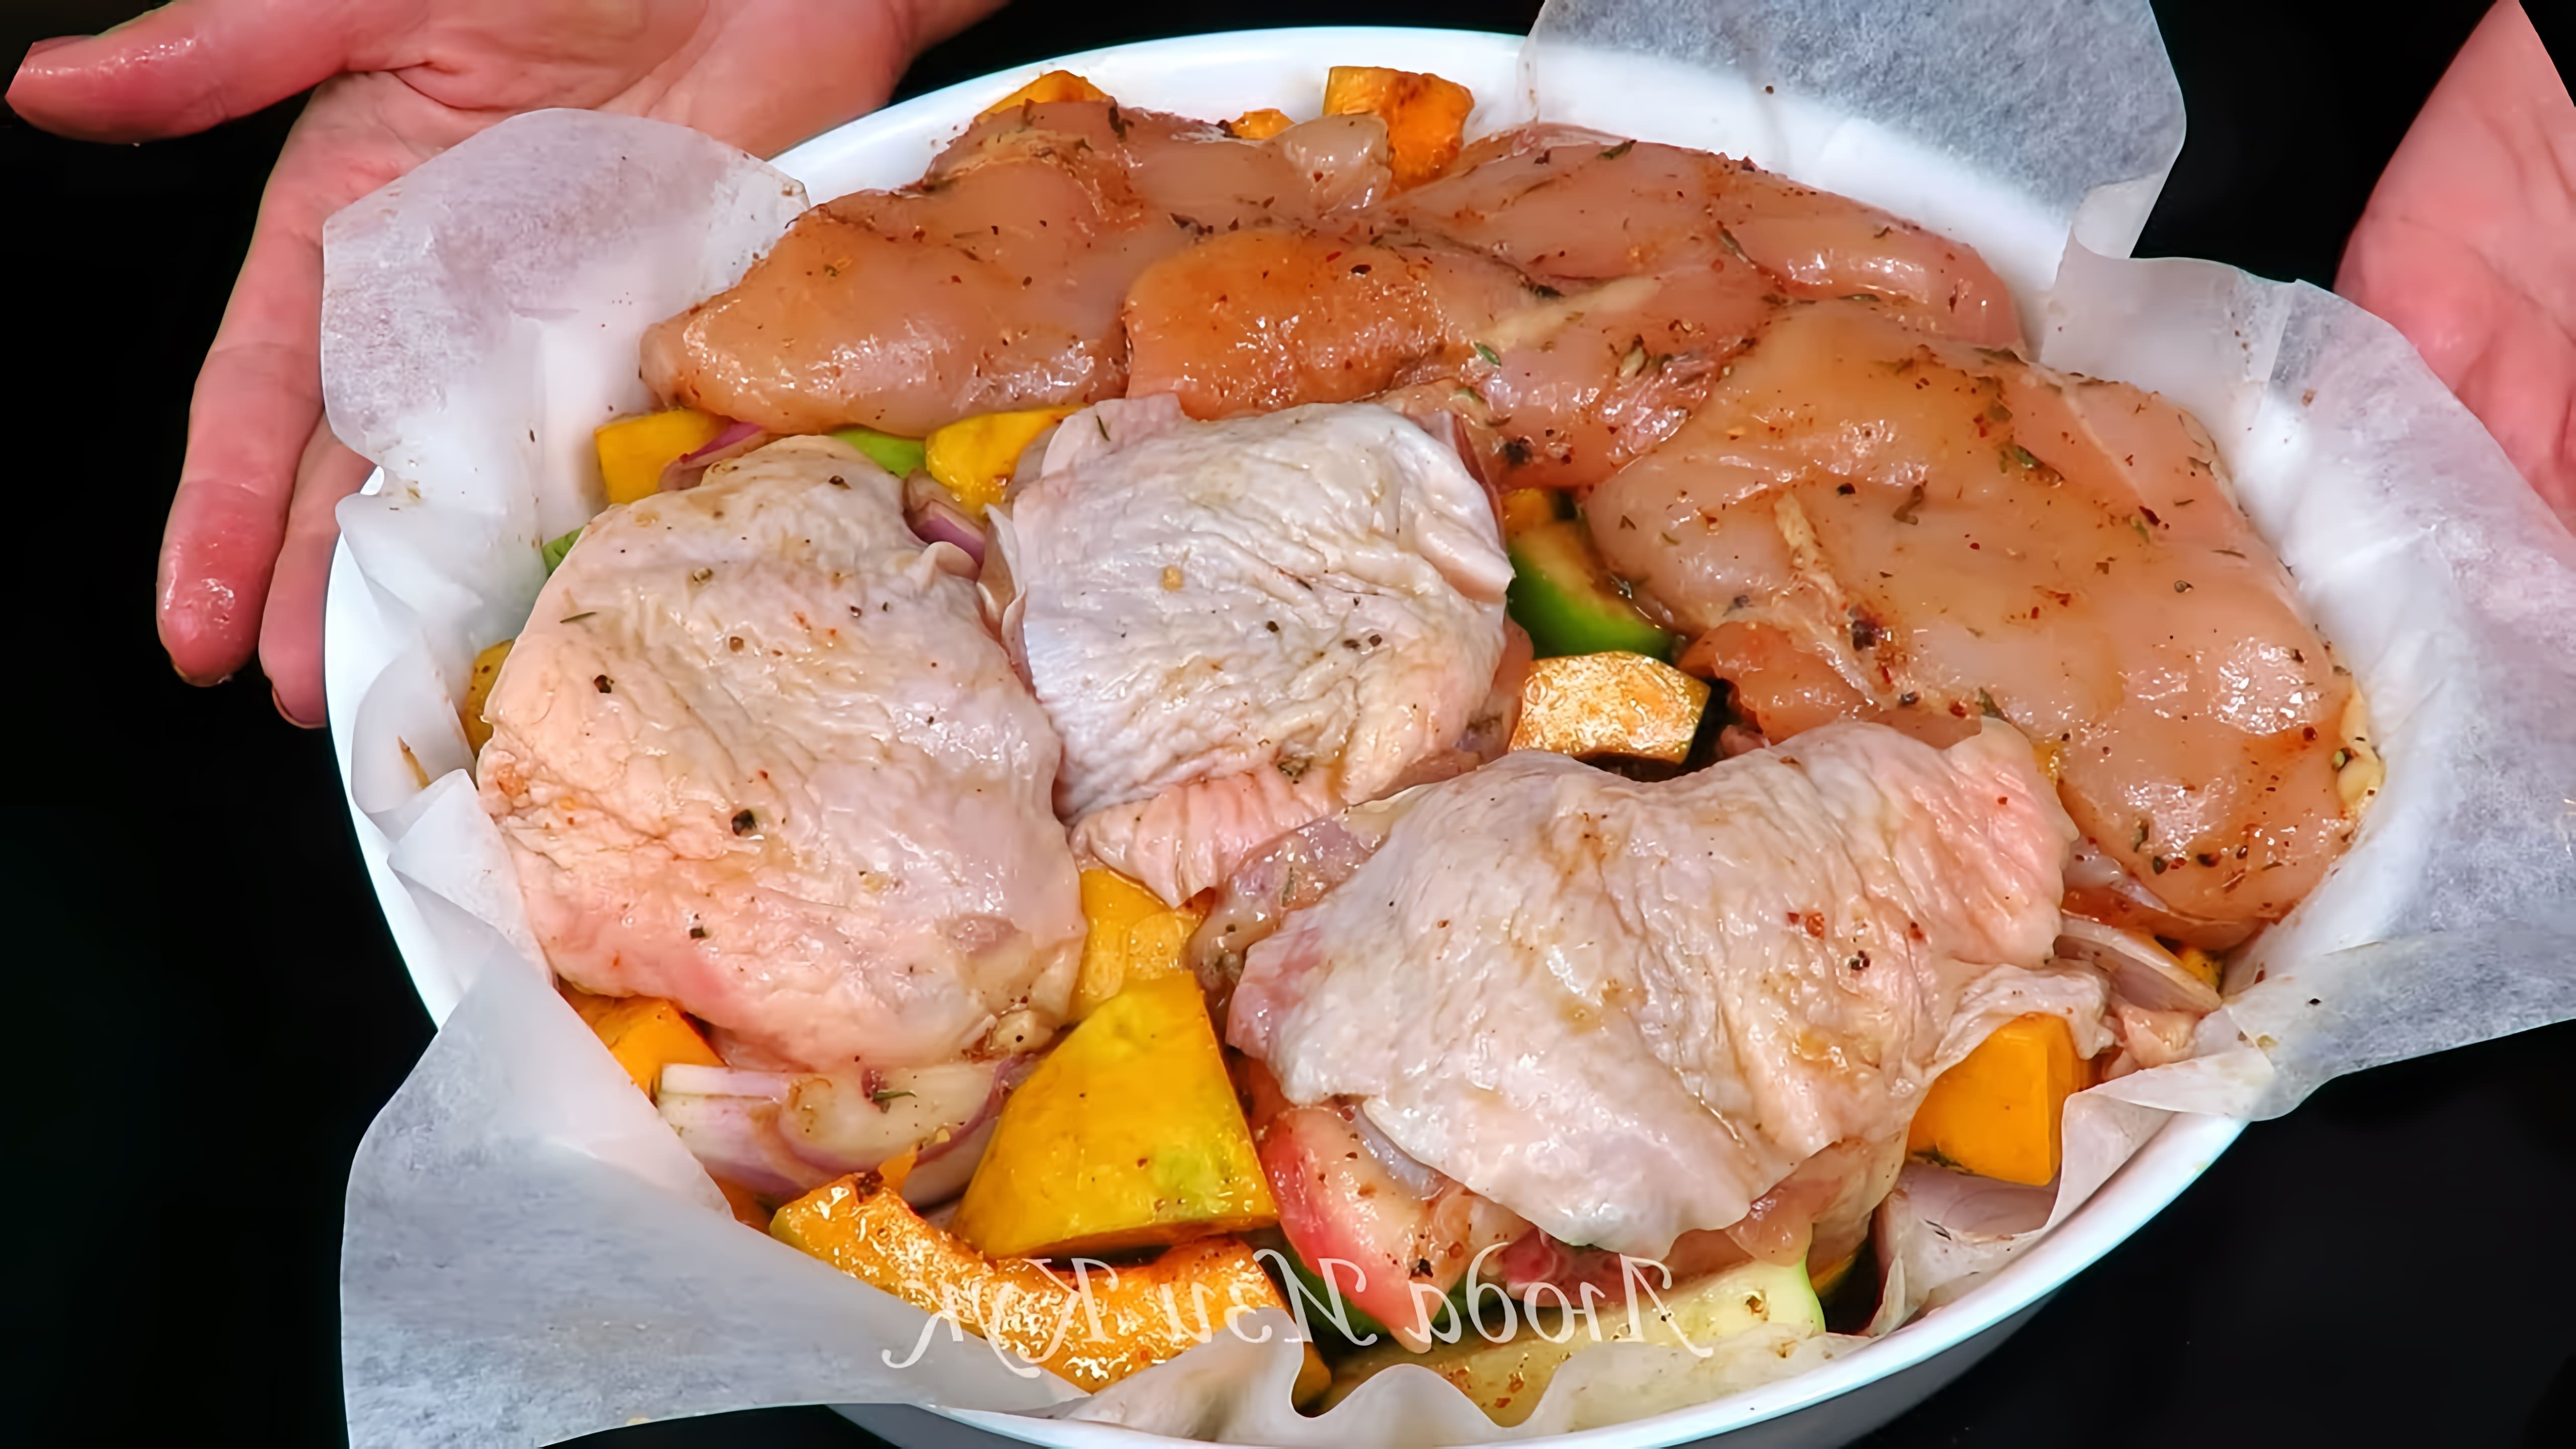 В этом видео демонстрируется процесс приготовления обеда из курицы и тыквы в духовке